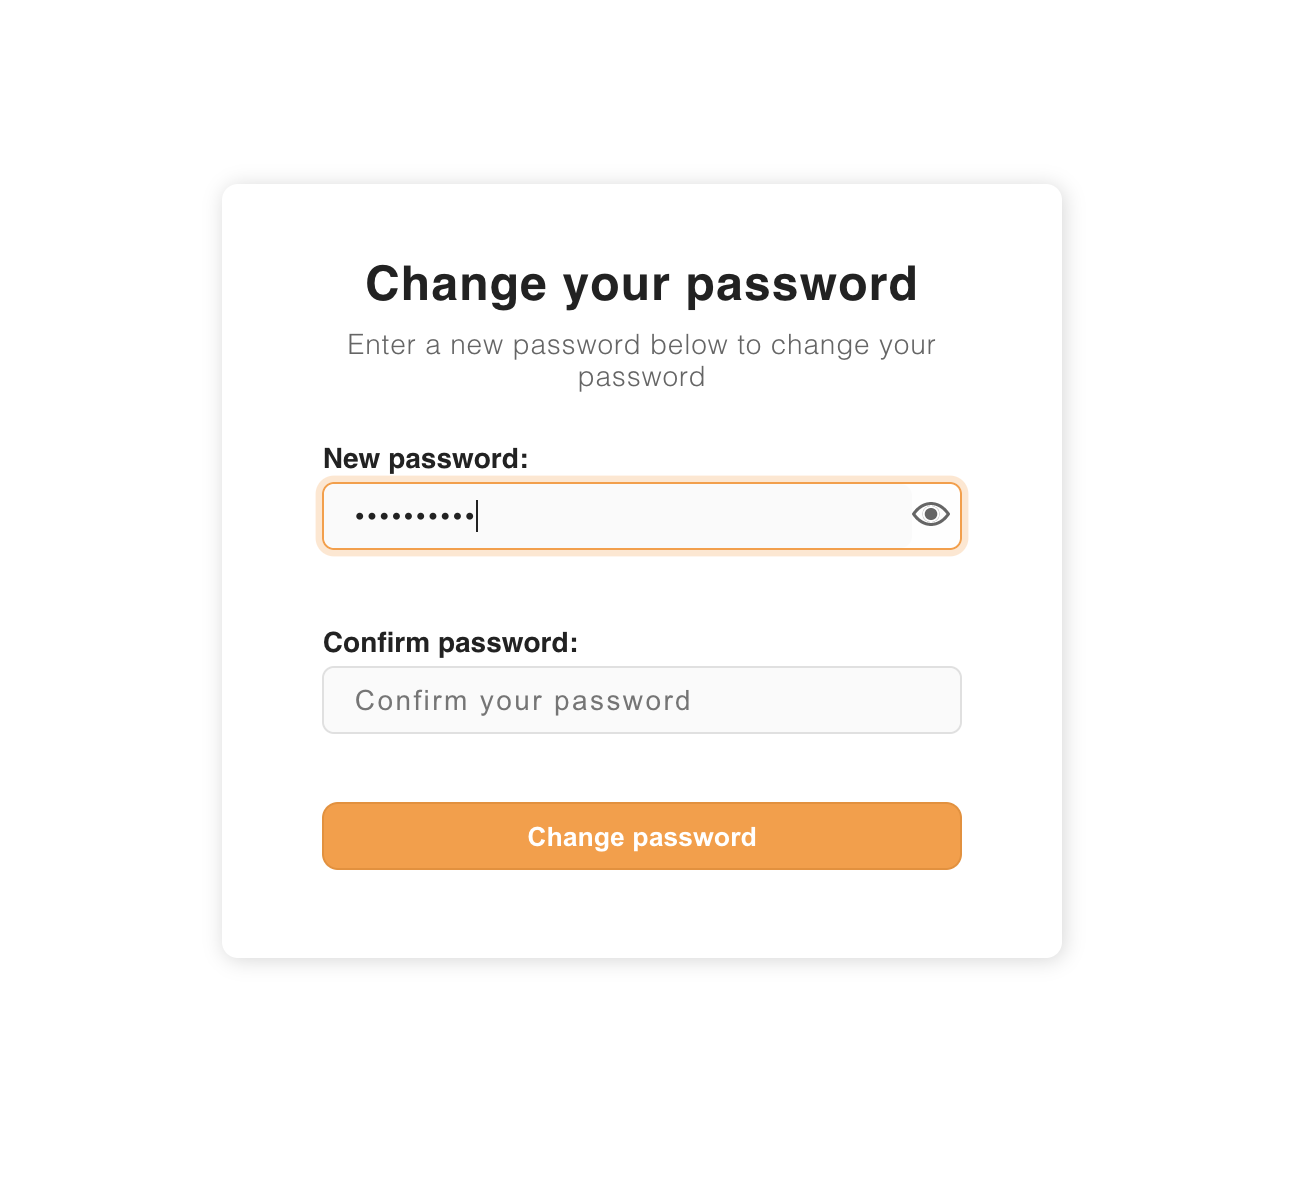 UI to change password